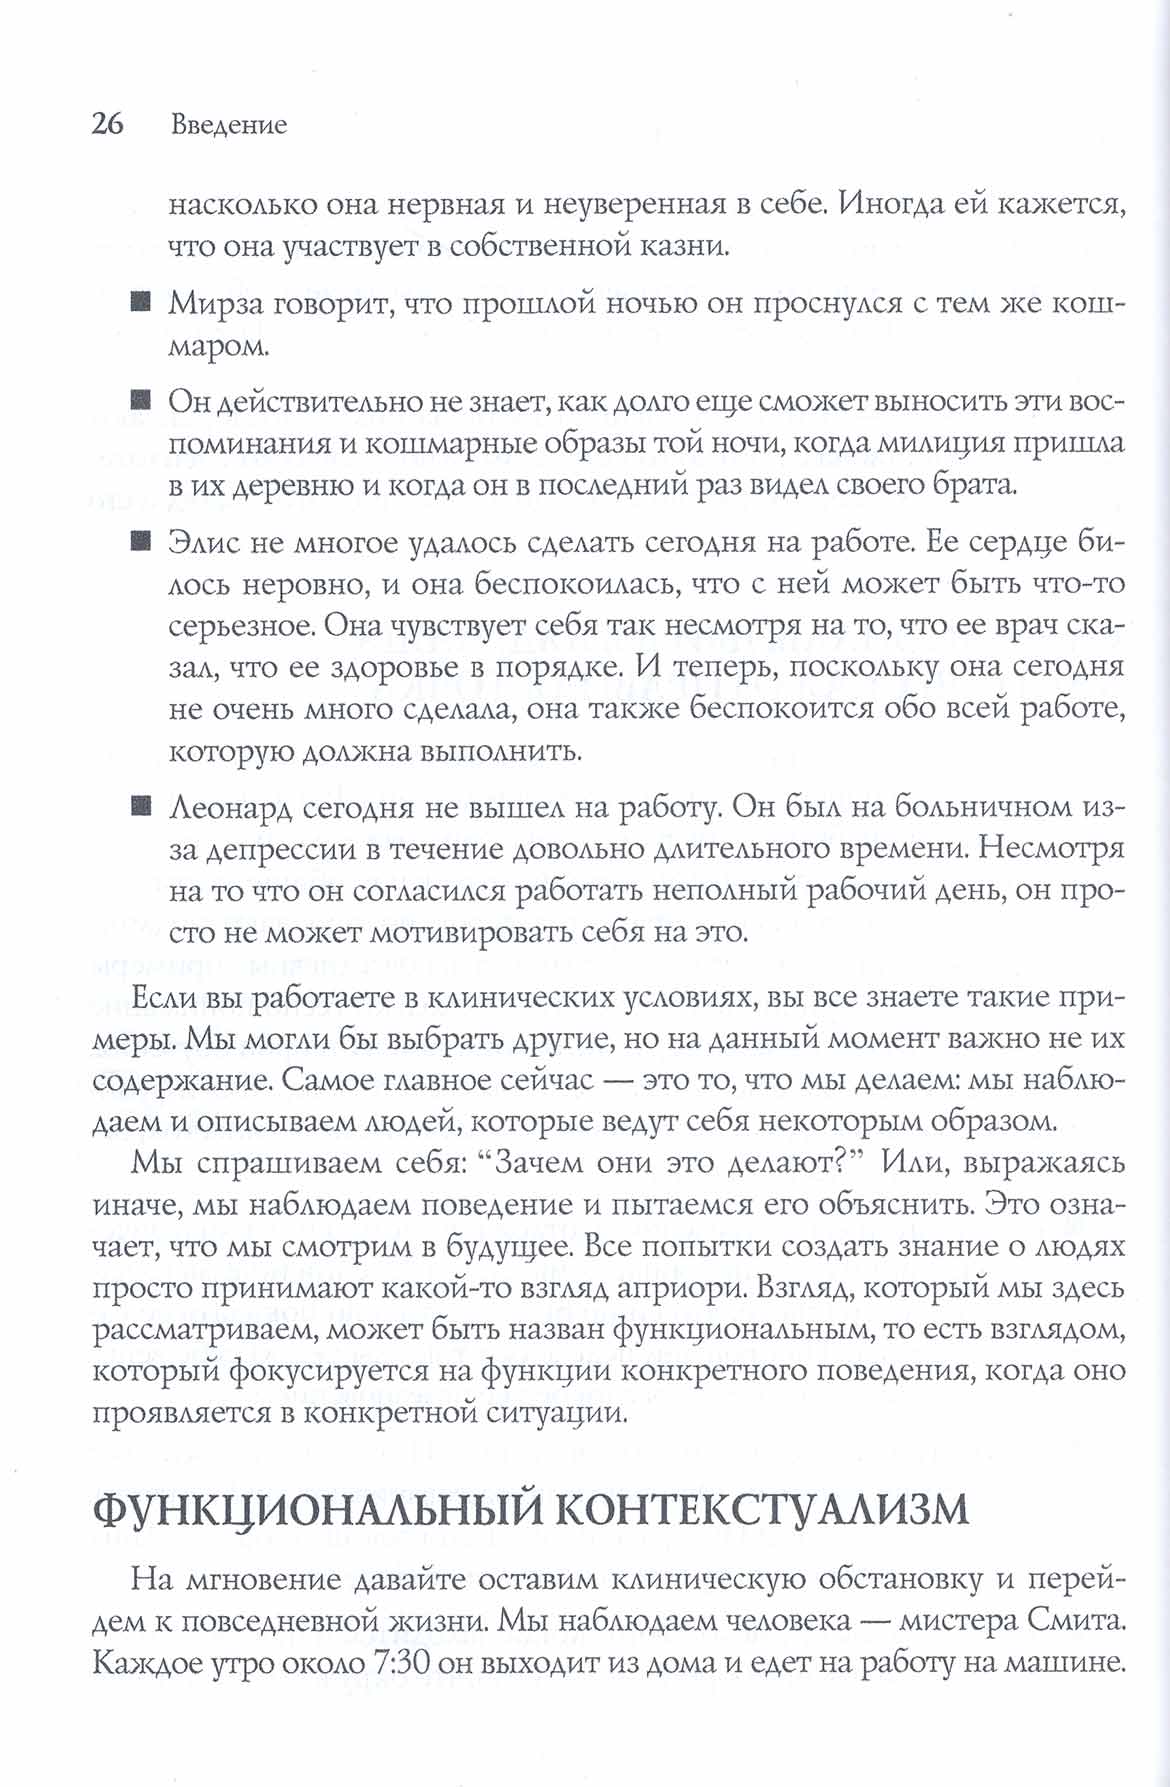 Примеры страниц из книги "Основы человеческого поведения для практикующих специалистов"